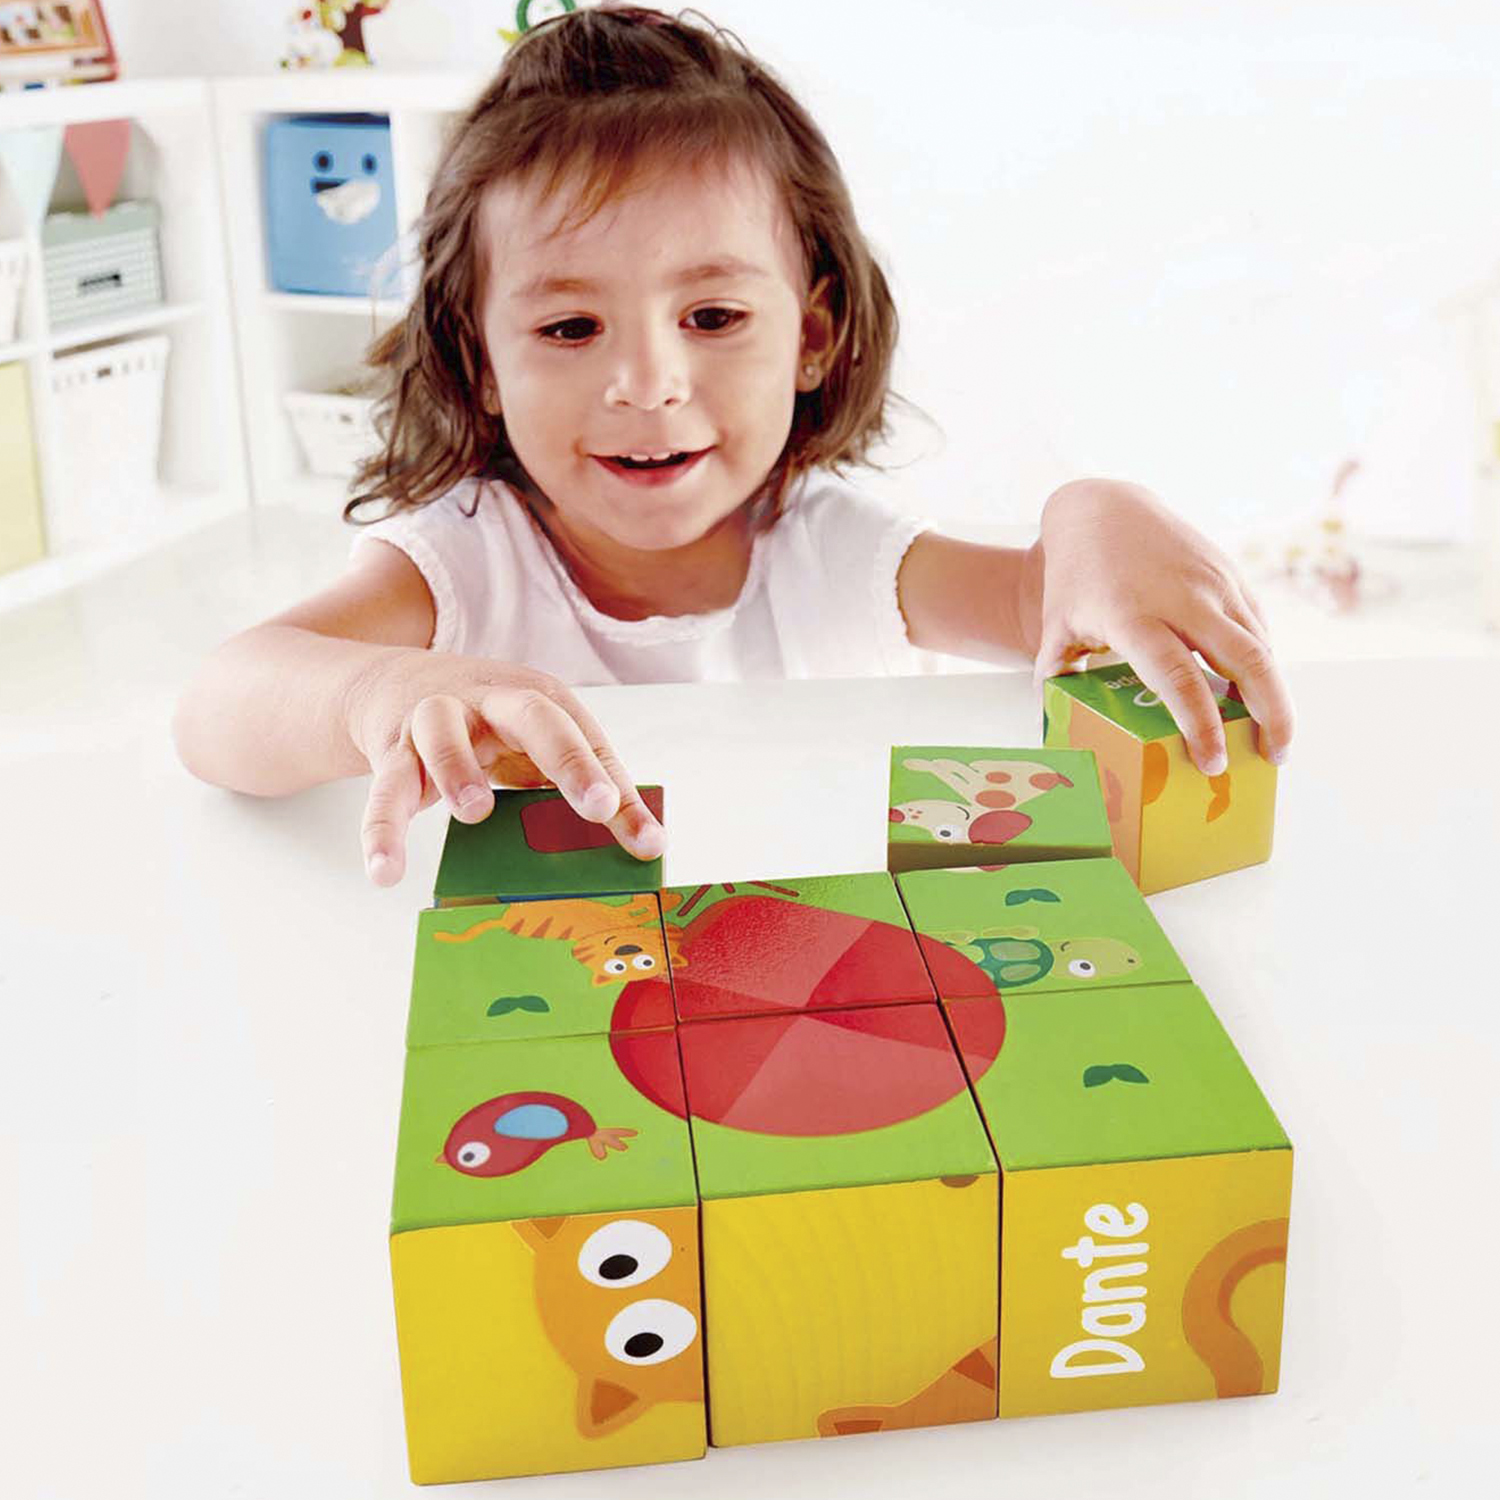 Развивающая игрушка Hape Кубики-пазлы Лили 9 элементов, 6 вариантов картинок, деревянные деревянная игрушка janod кубики деревянные лесные портреты